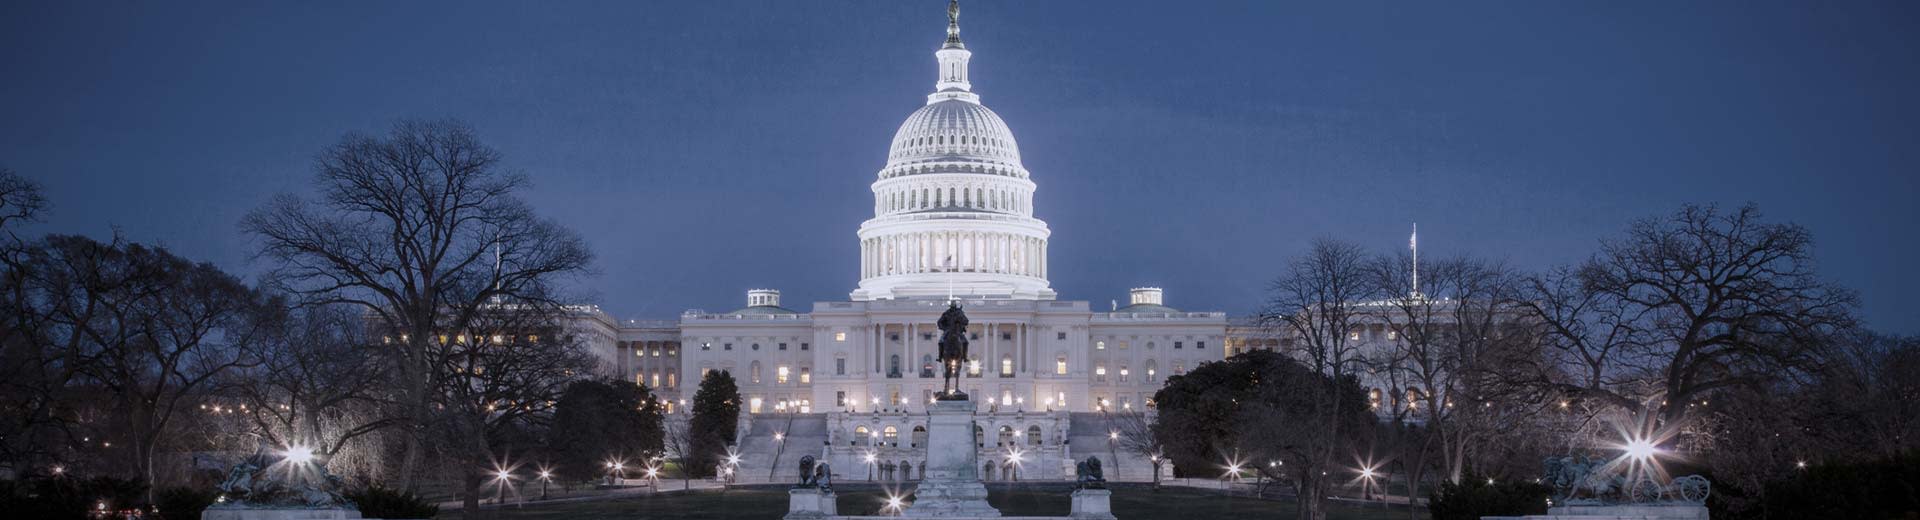 ネイビーブルーの空が、ワシントンD.C.で最も有名なランドマークのひとつである国会議事堂を縁取る。